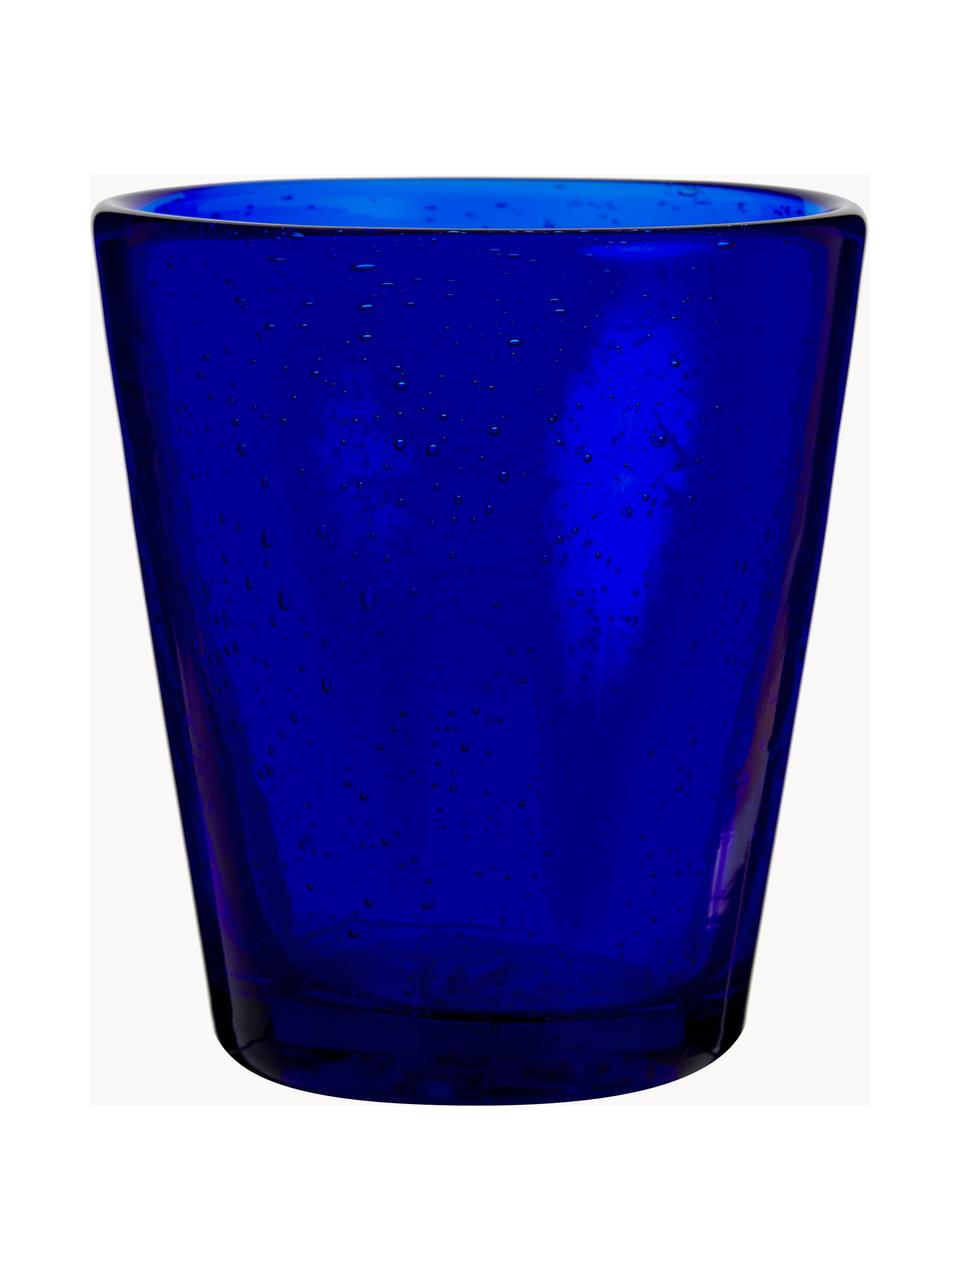 Sada sklenic na vodu se vzduchovými bublinami Baita, 6 dílů, Sklo, Odstíny modré, tyrkysové a šedé, transparentní, Ø 9 cm, V 10 cm, 330 ml